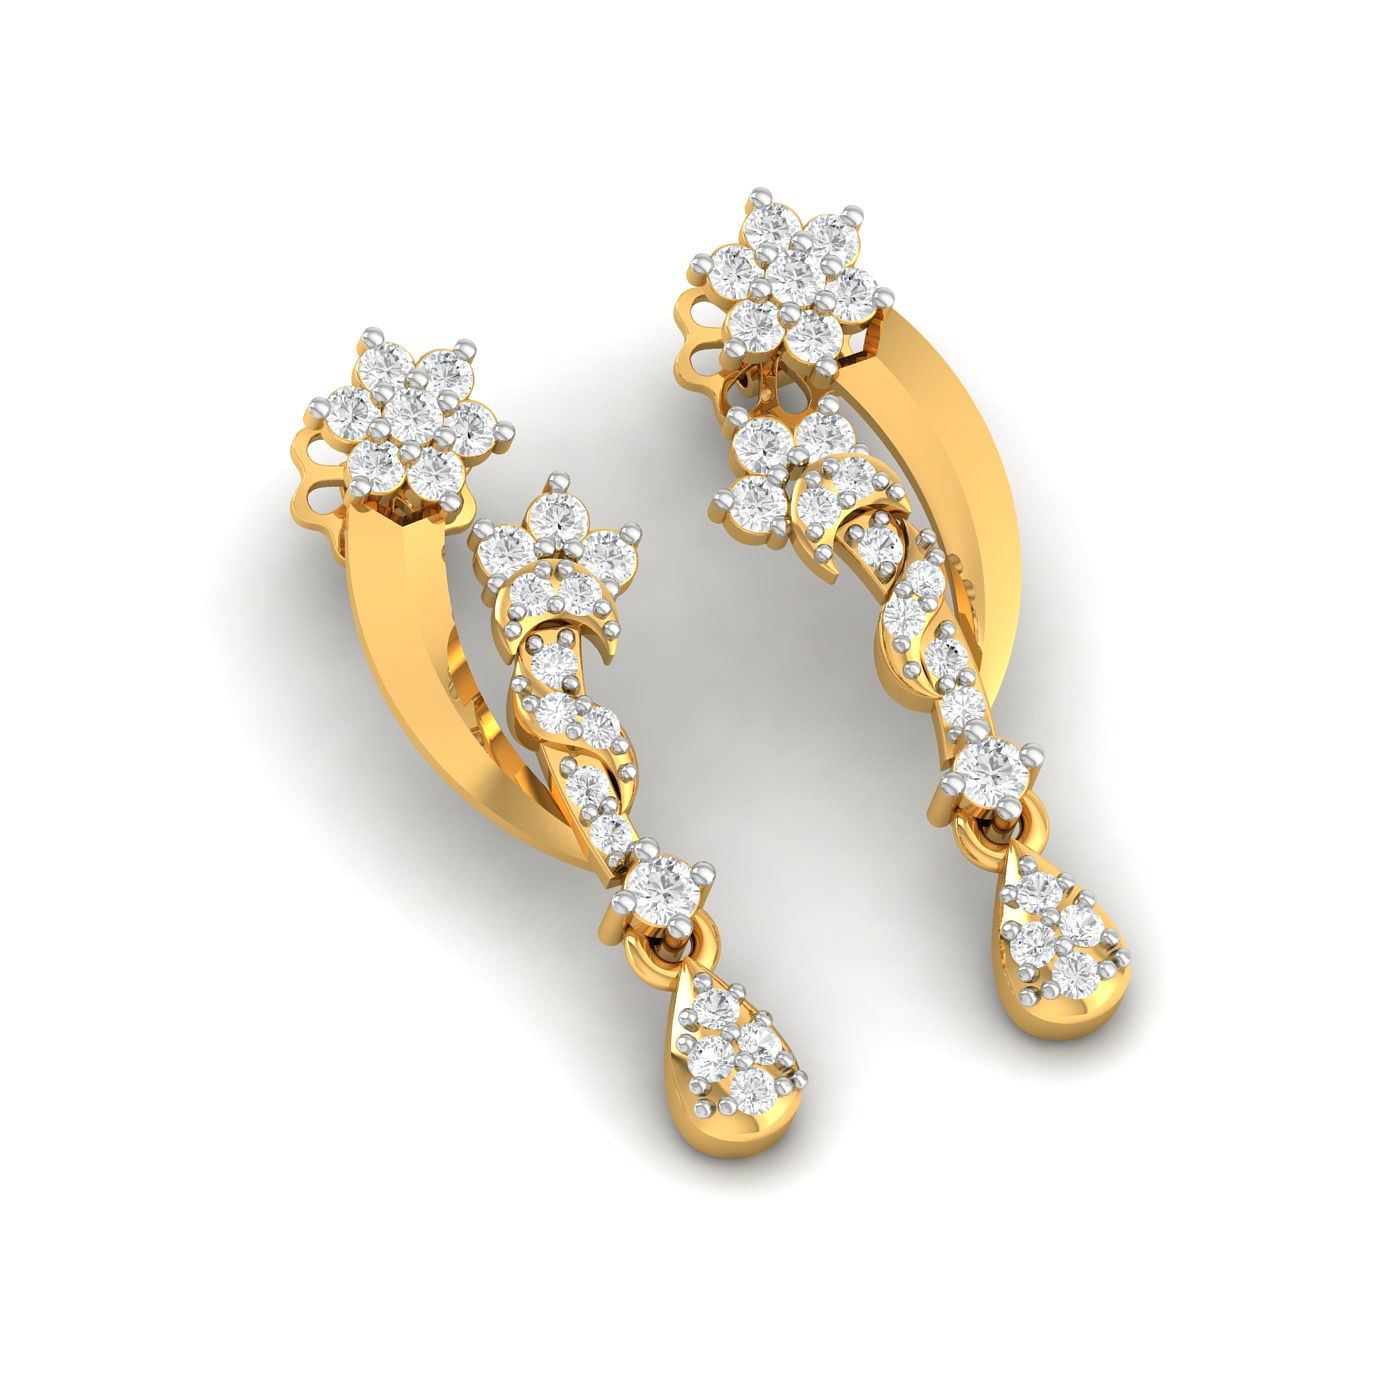 Small drop stud diamond earring in yellow gold